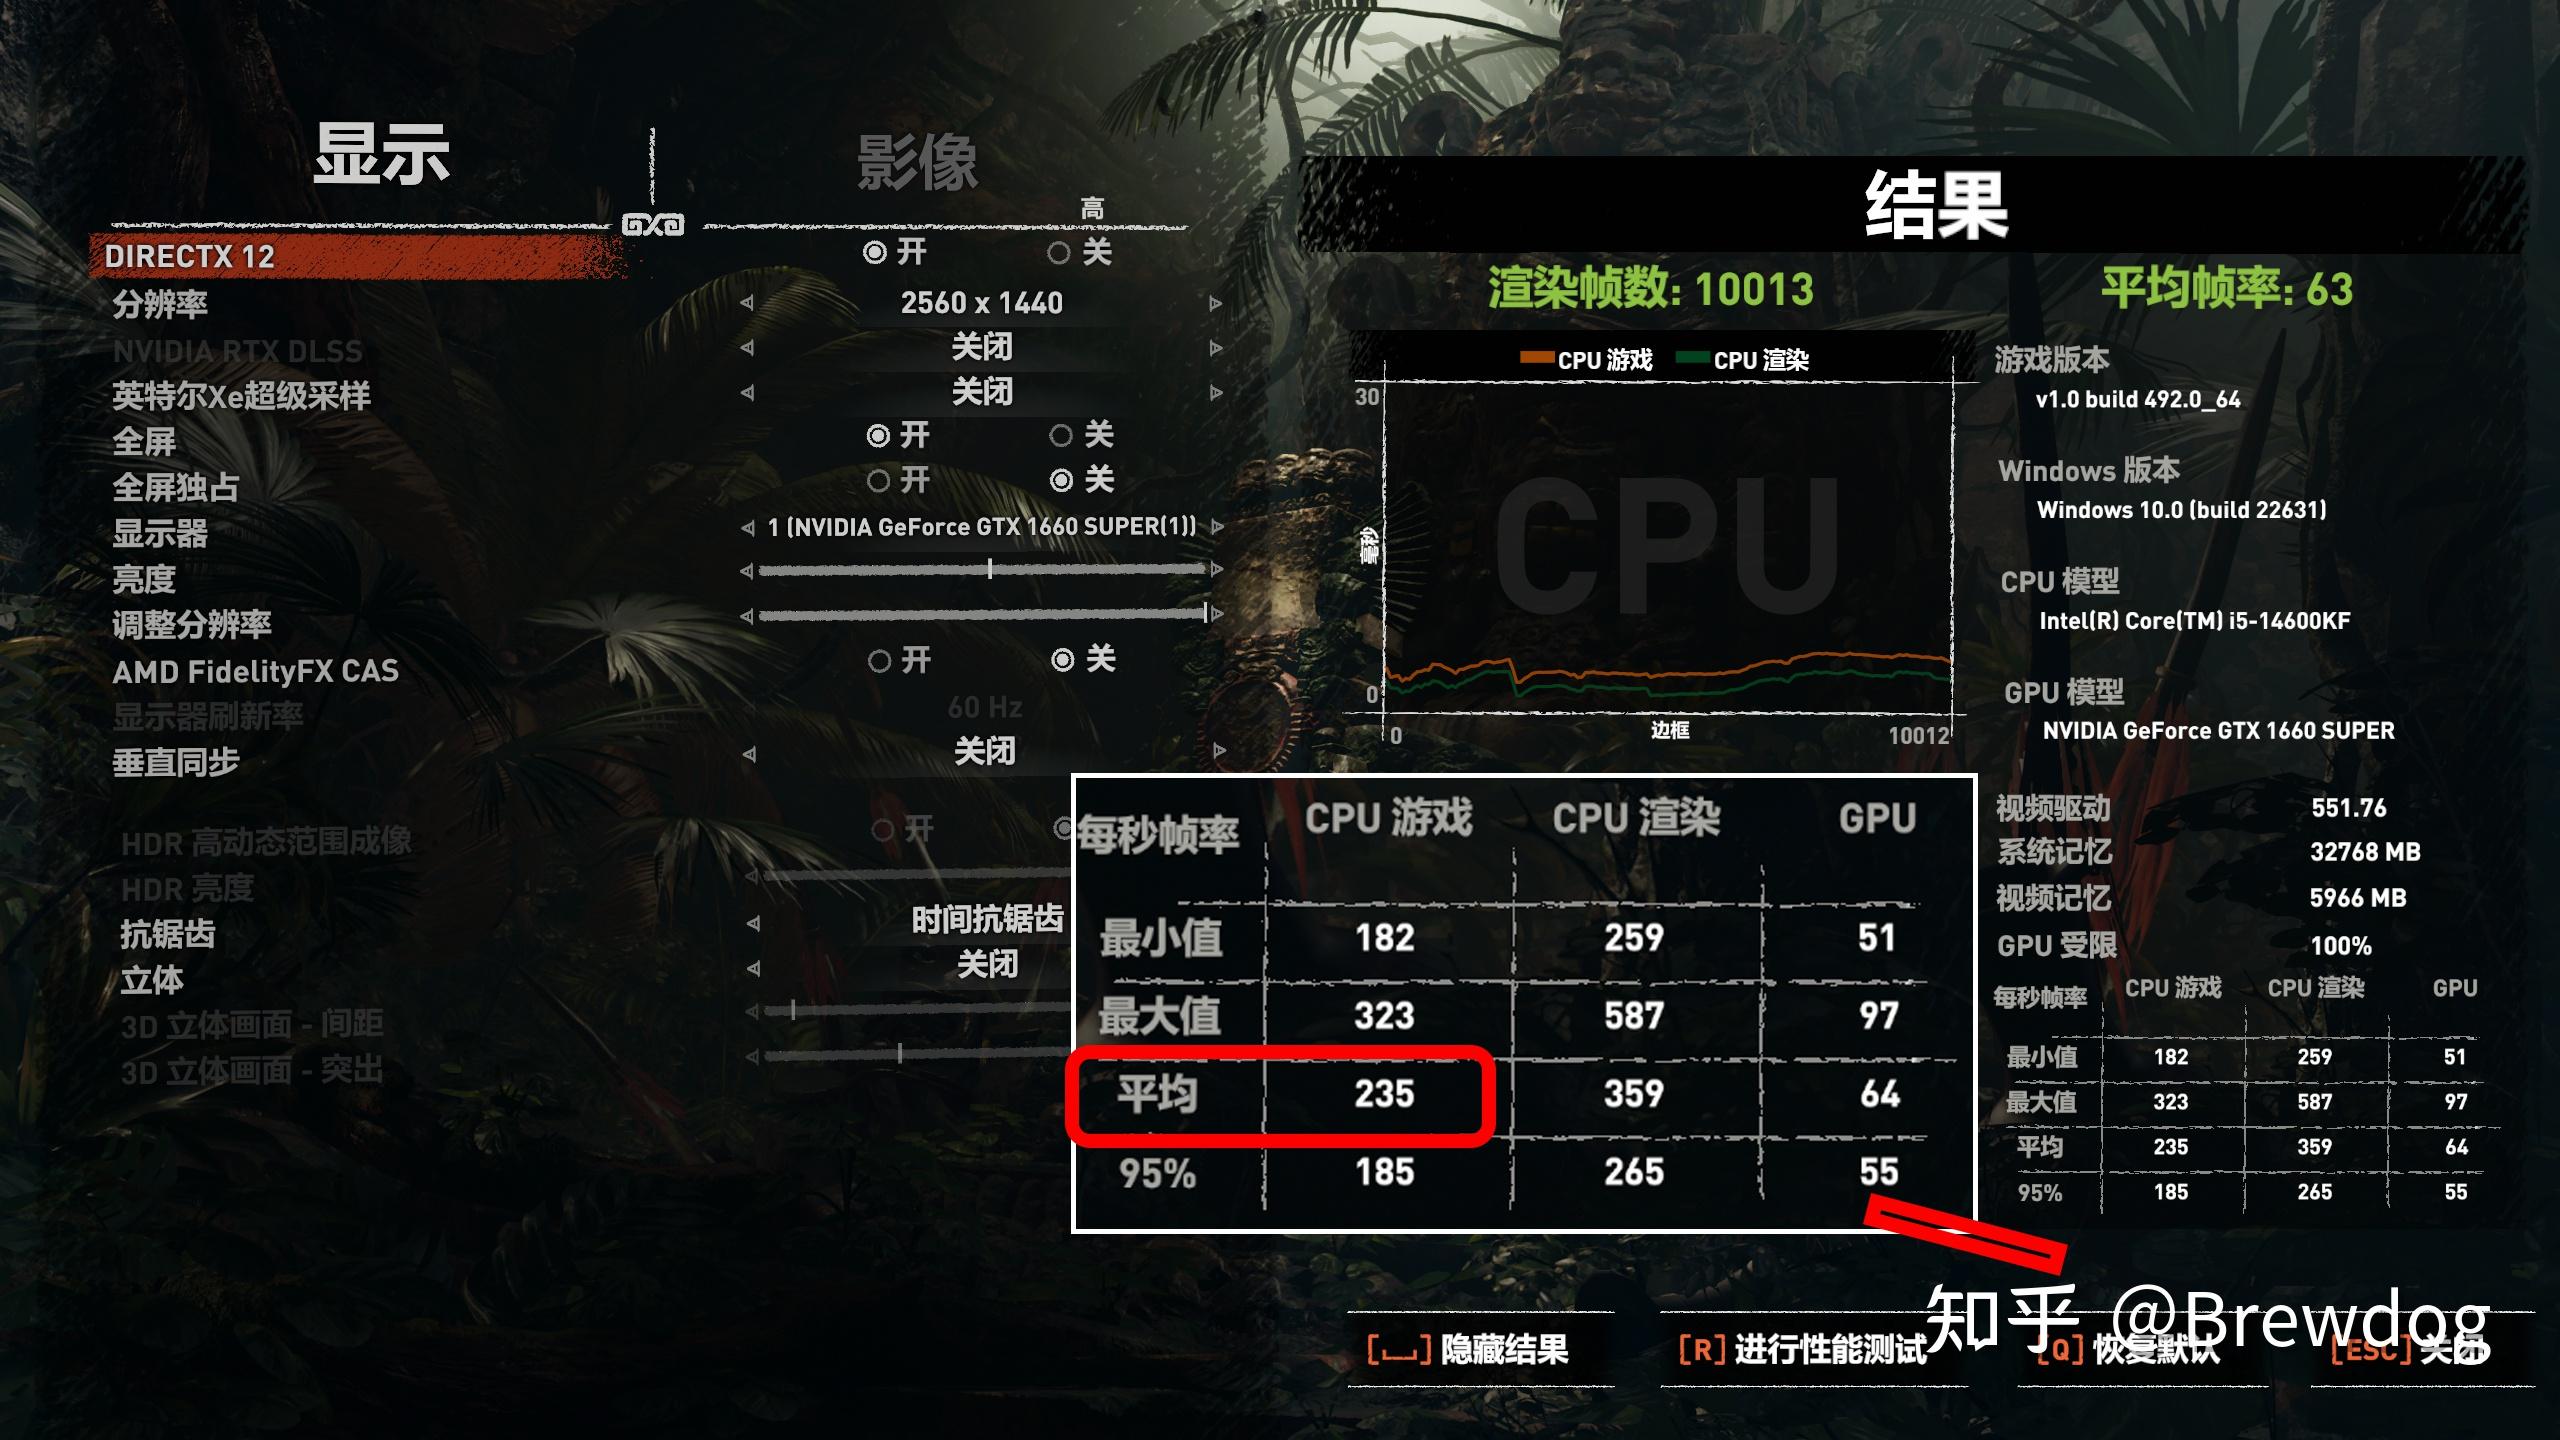 amd ddr4 AMD DDR4内存条，电脑速度狂飙！游戏不再卡顿，工作效率倍增  第1张